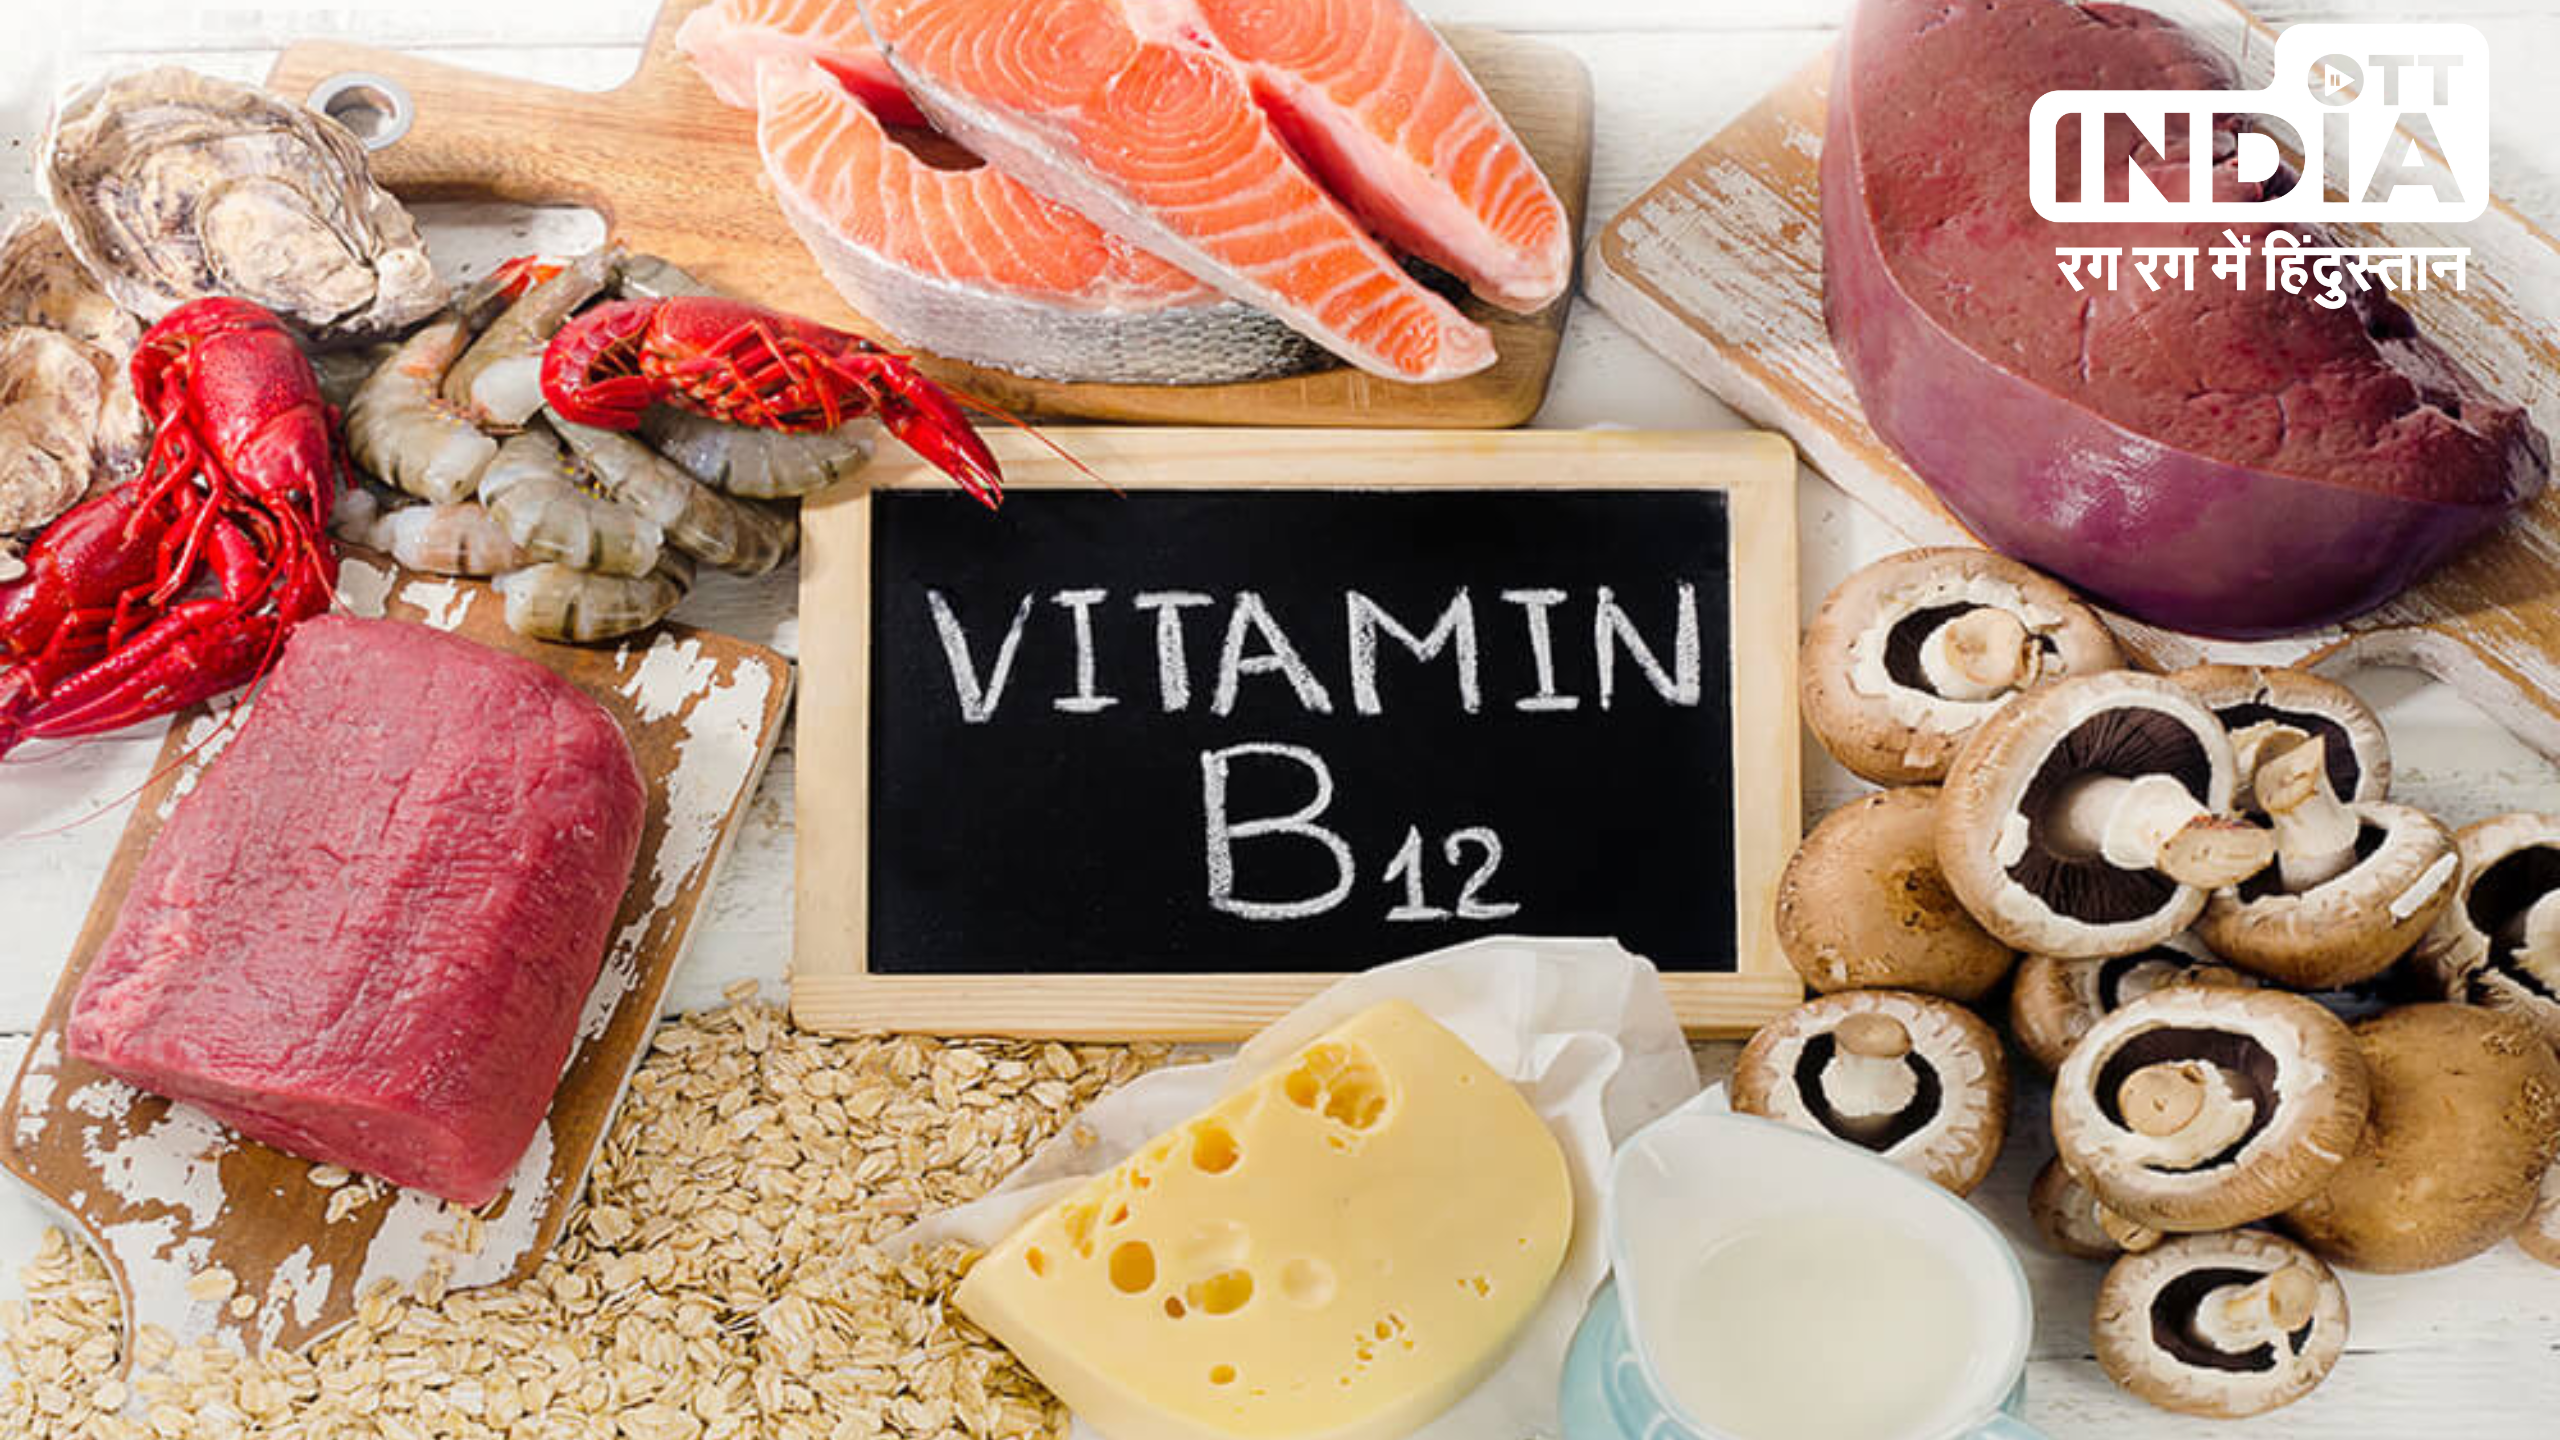 Vitamin B12-Rich Foods: शाकाहारी हैं तो अपने खाने में शामिल करें ये पांच विटामिन B12 वाले फूड्स, रहेंगे हमेशा स्वस्थ